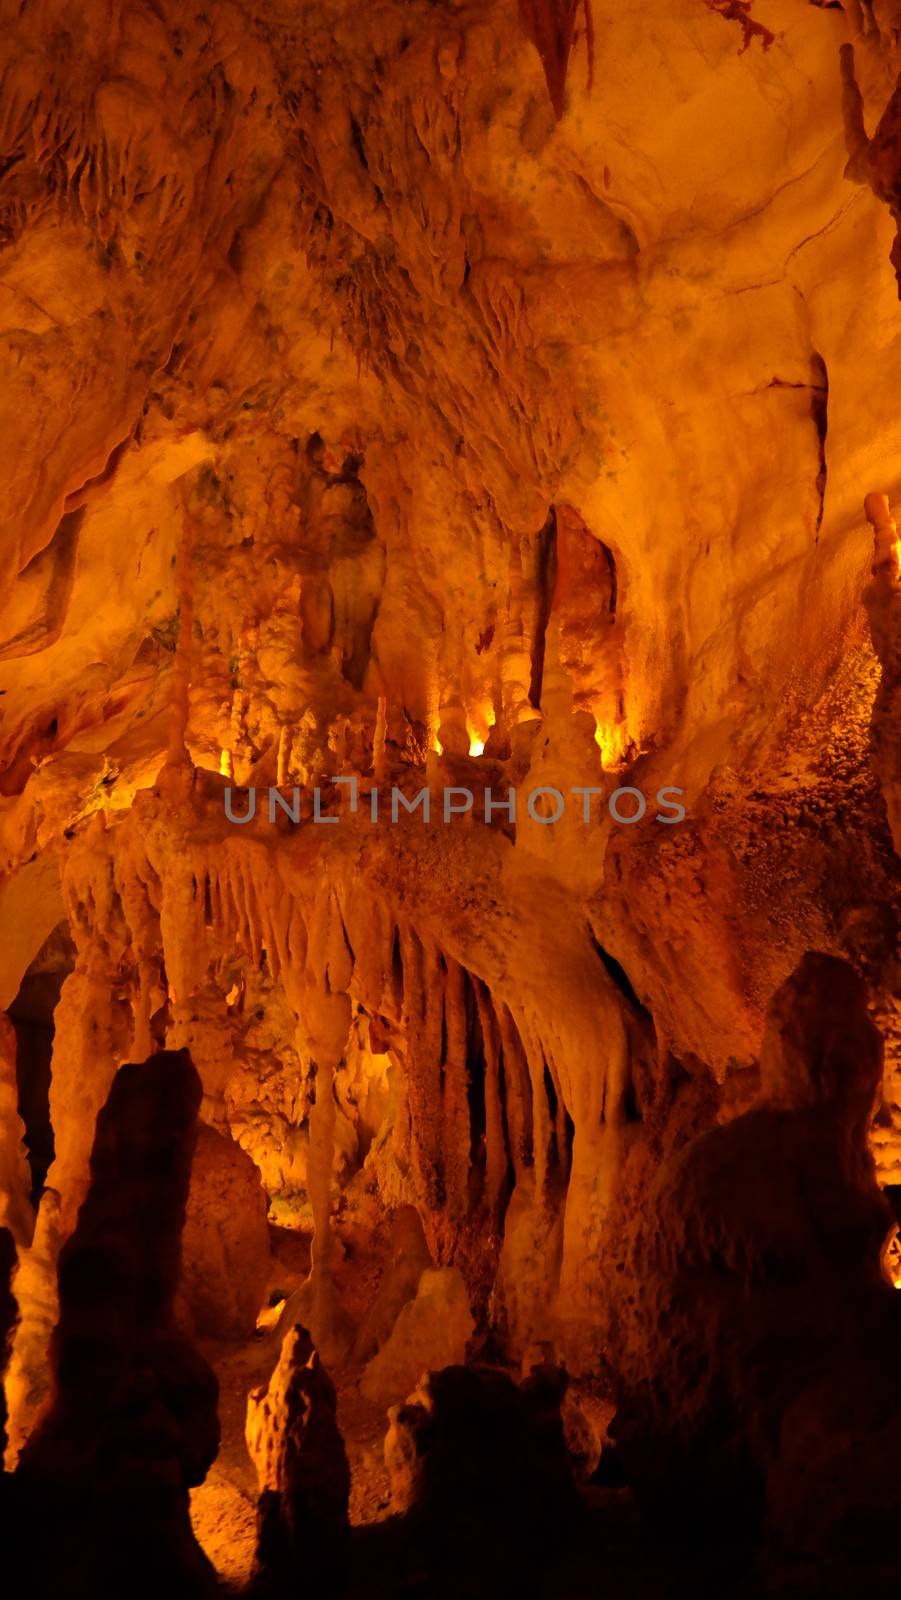 Interior view to Grutas Mira de Aire cave, Portugal by homocosmicos